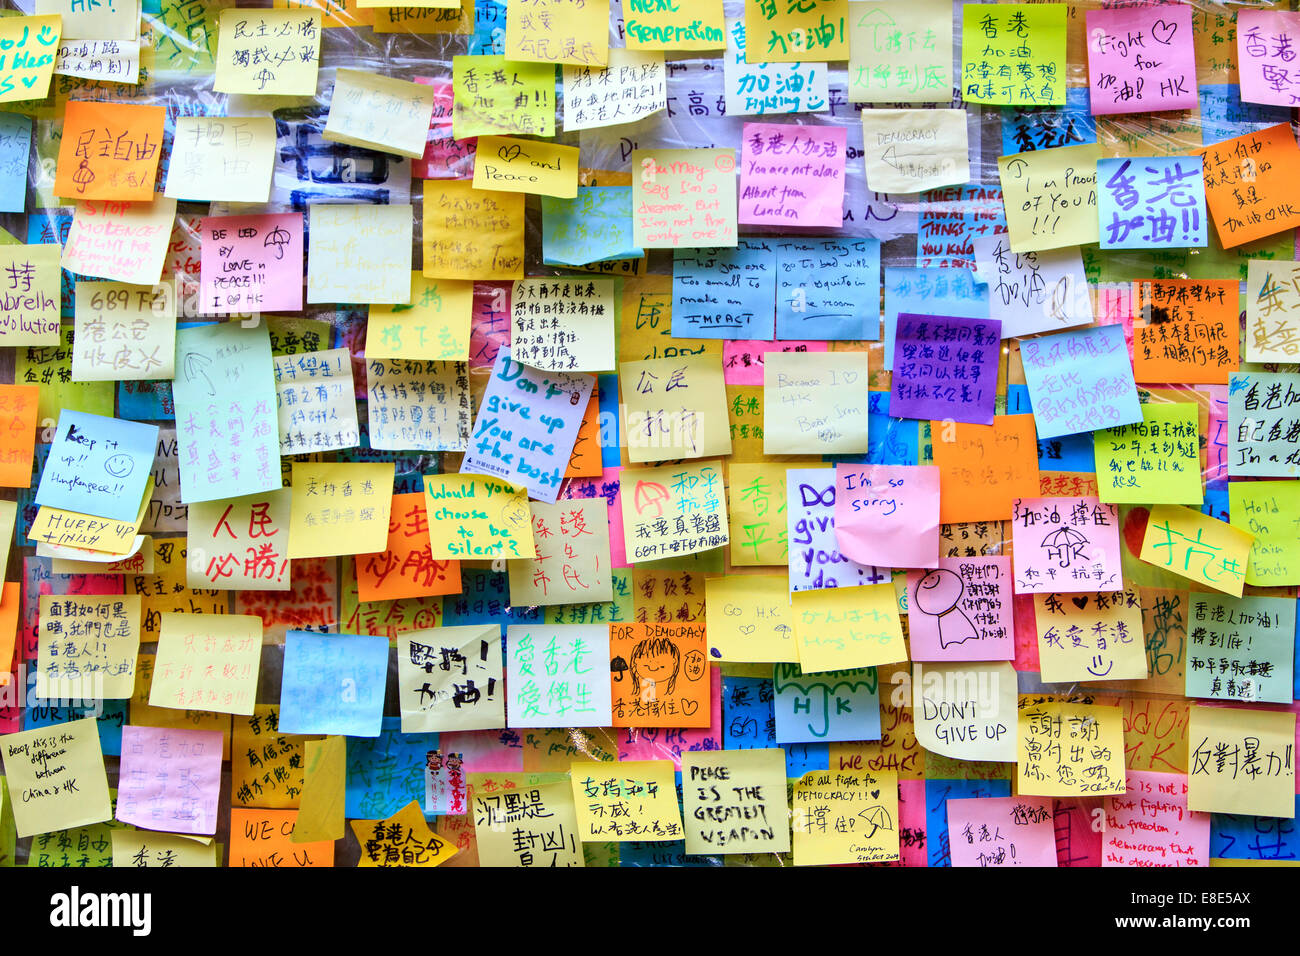 wall of wishes at umbrella revolution in Hong Kong Stock Photo